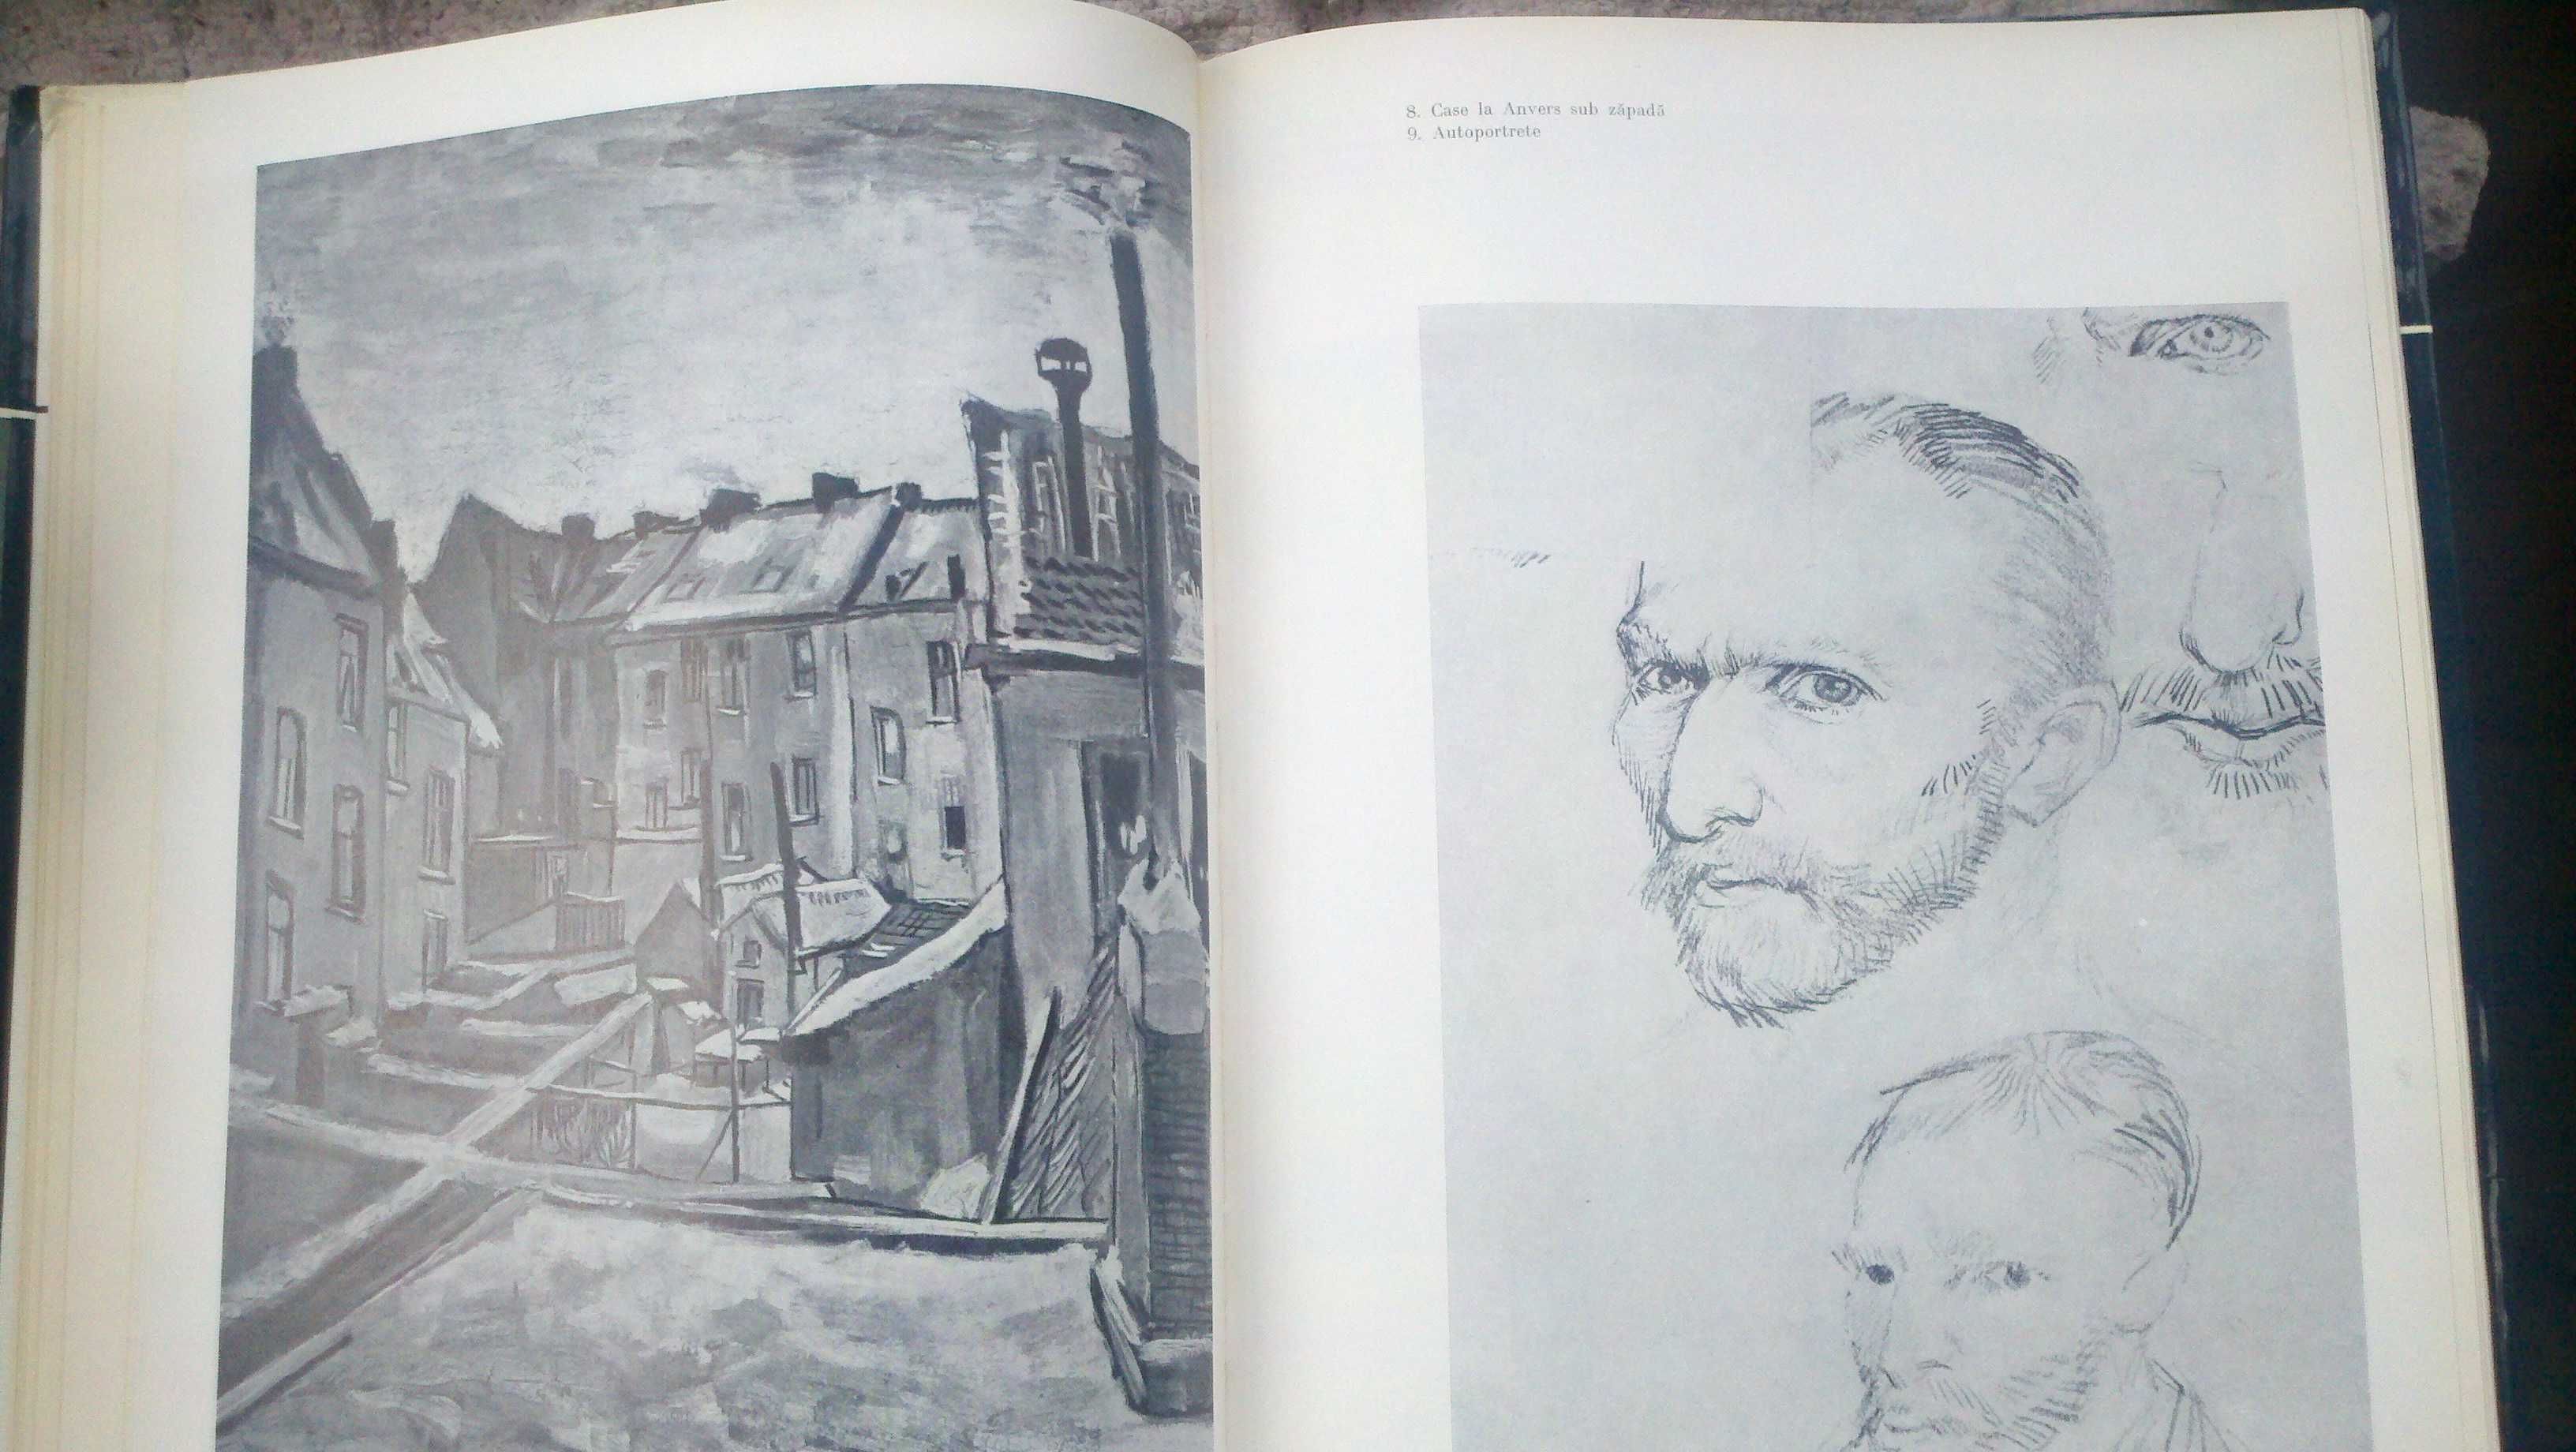 Van Gogh - Альбом.Классика универсальной живописи.Румыния,1976г.